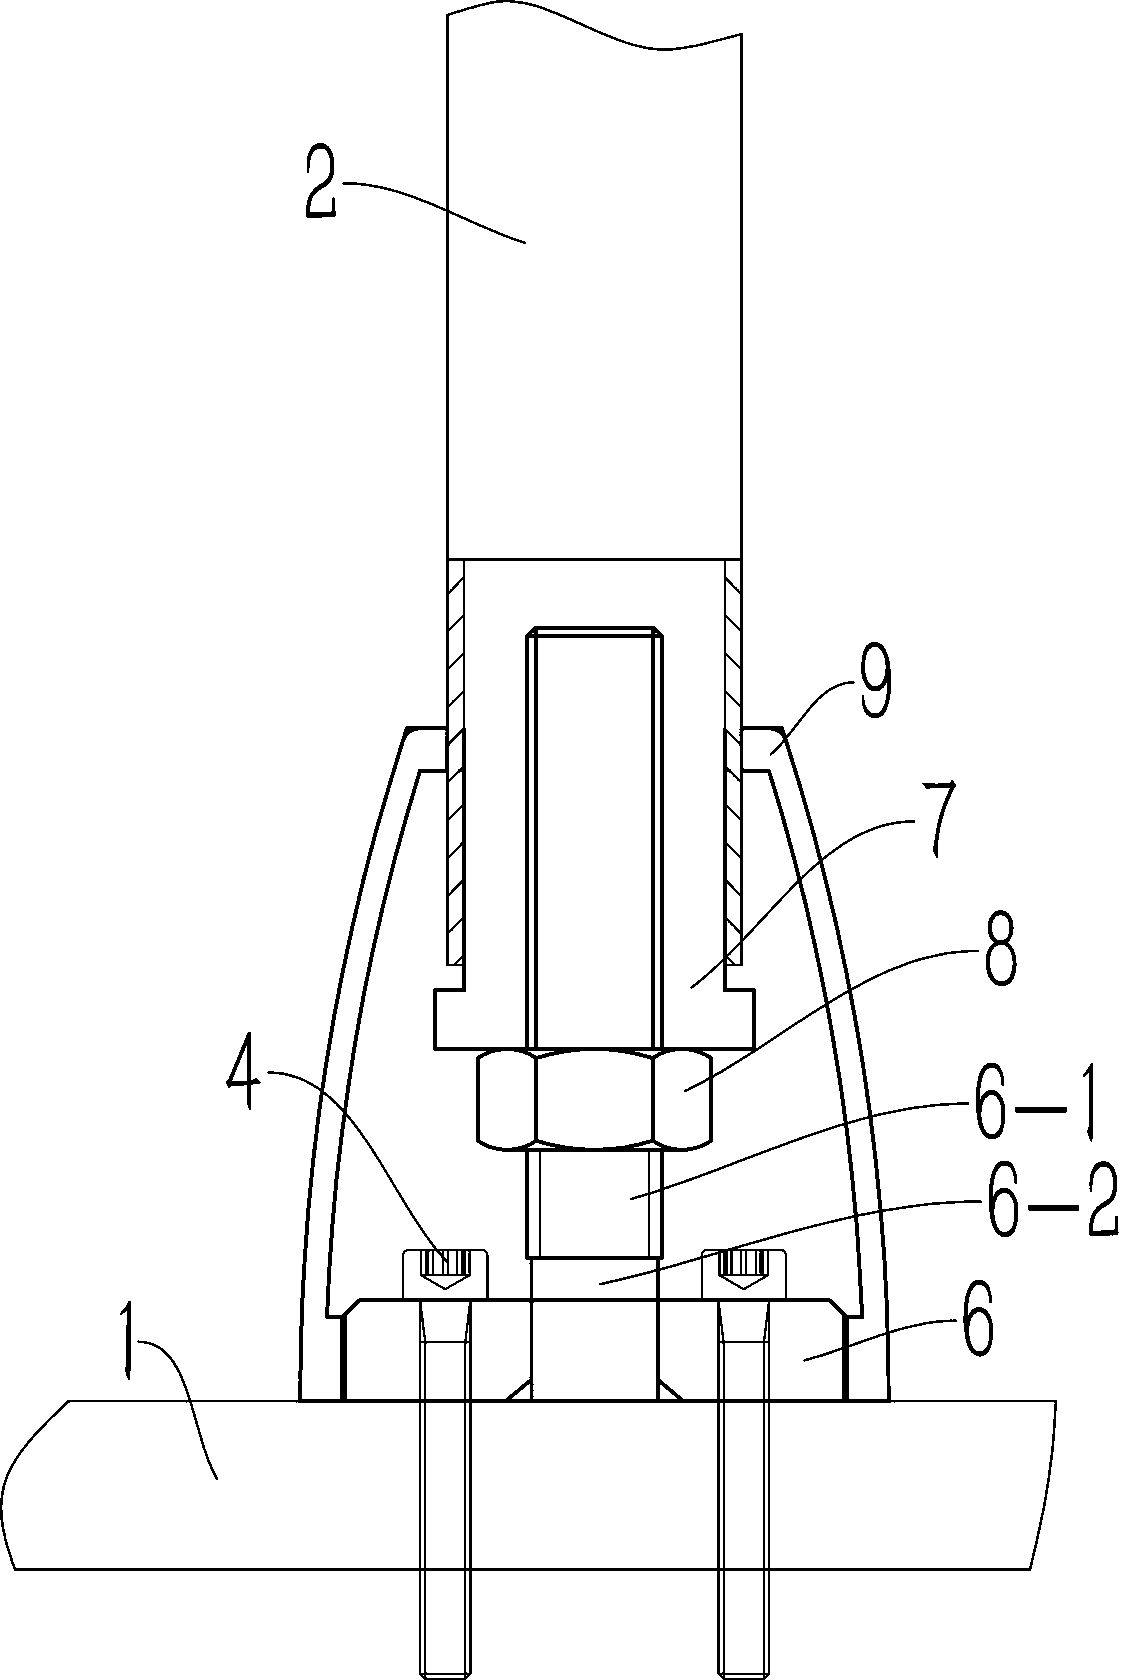 Novel adjustable armrest rod connecting structure